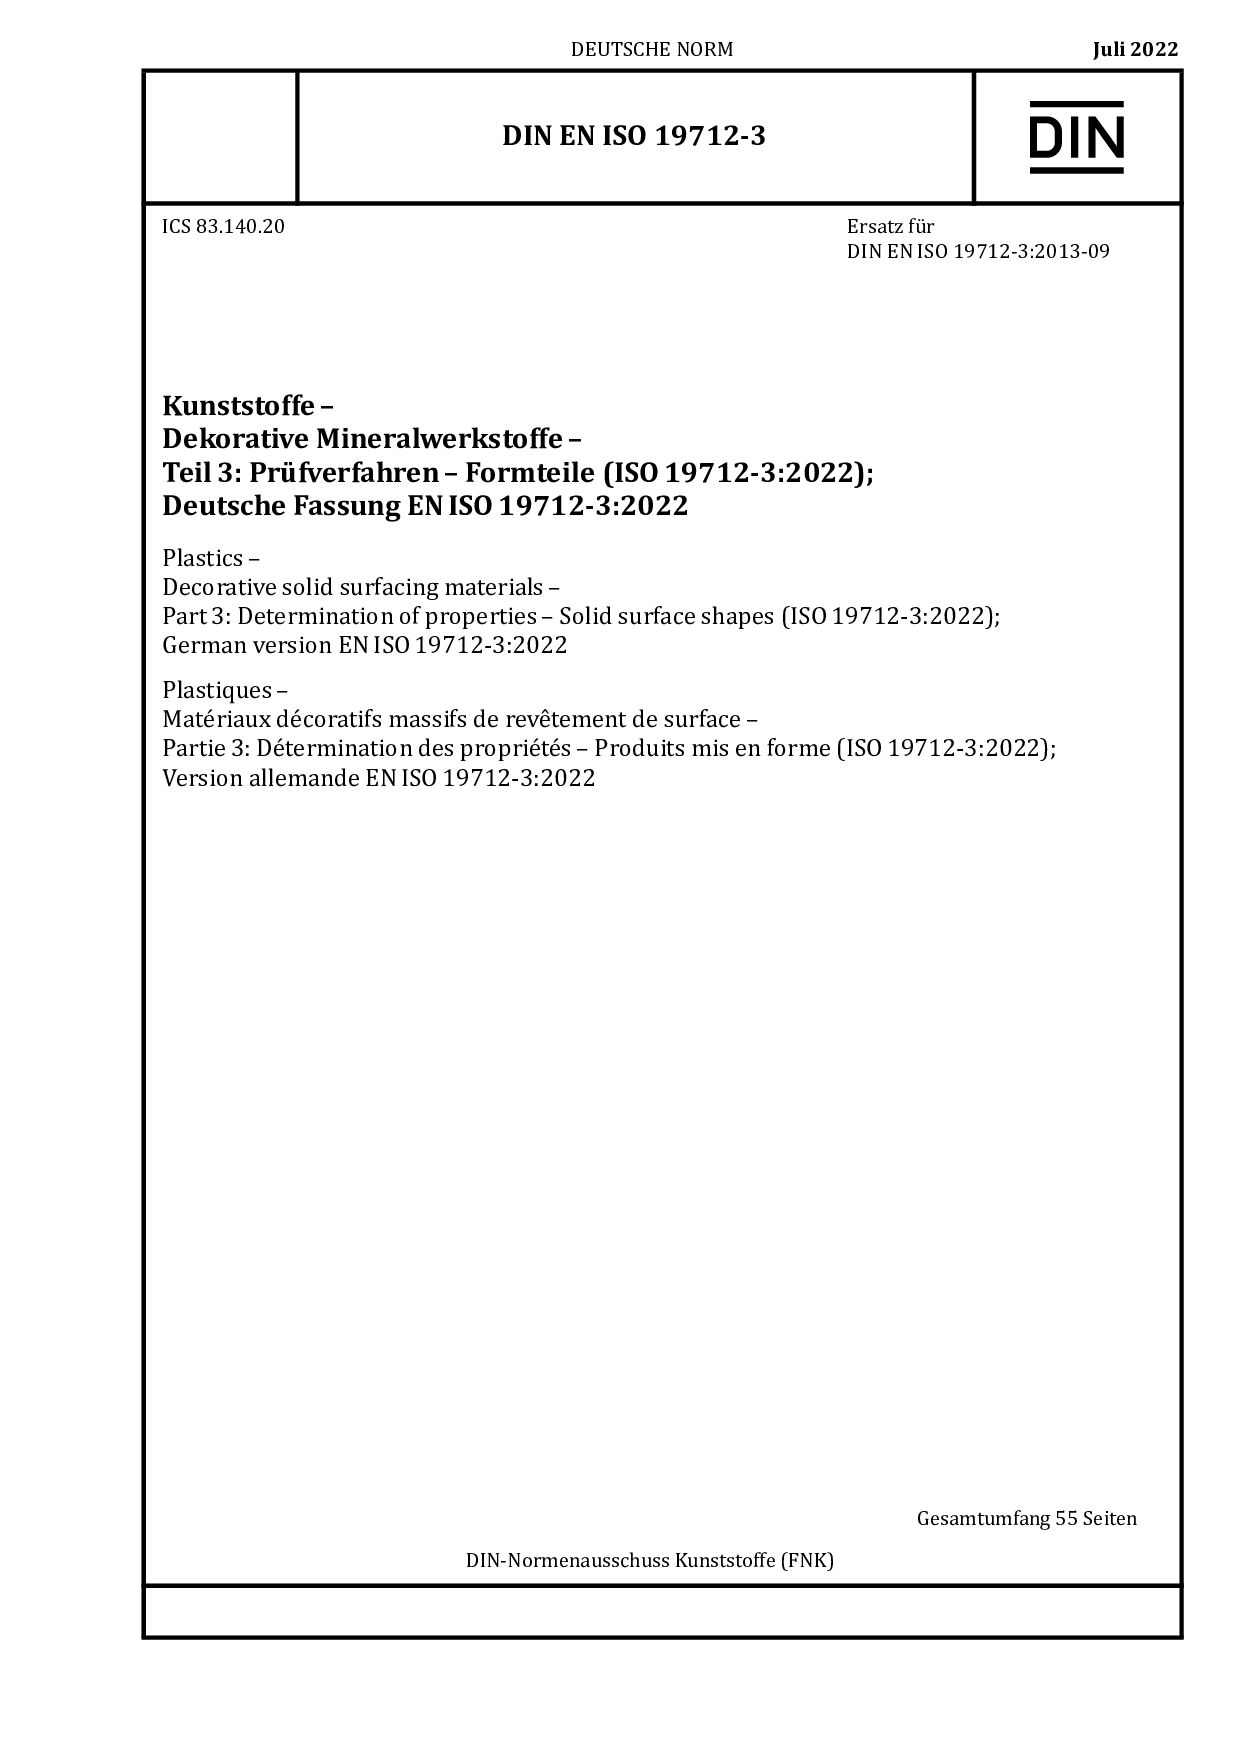 DIN EN ISO 19712-3:2022封面图